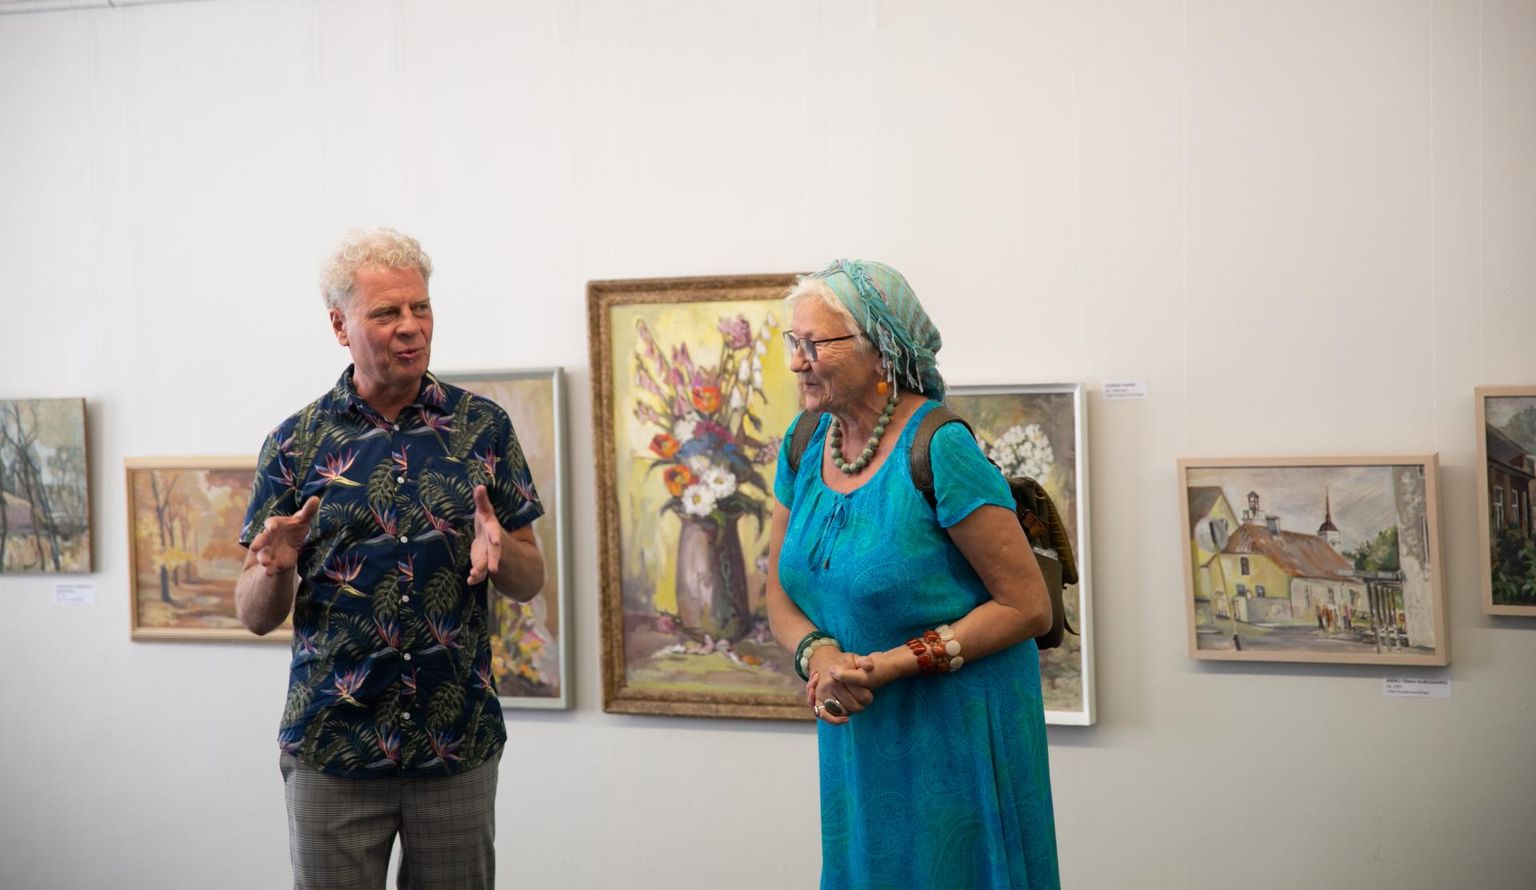 Vello Puujalast kui värvikast isiksusest ja kunstnikust kõnelesid rühmituse R-Kunst liikmed Riho Hütt ja Anne Pajula.